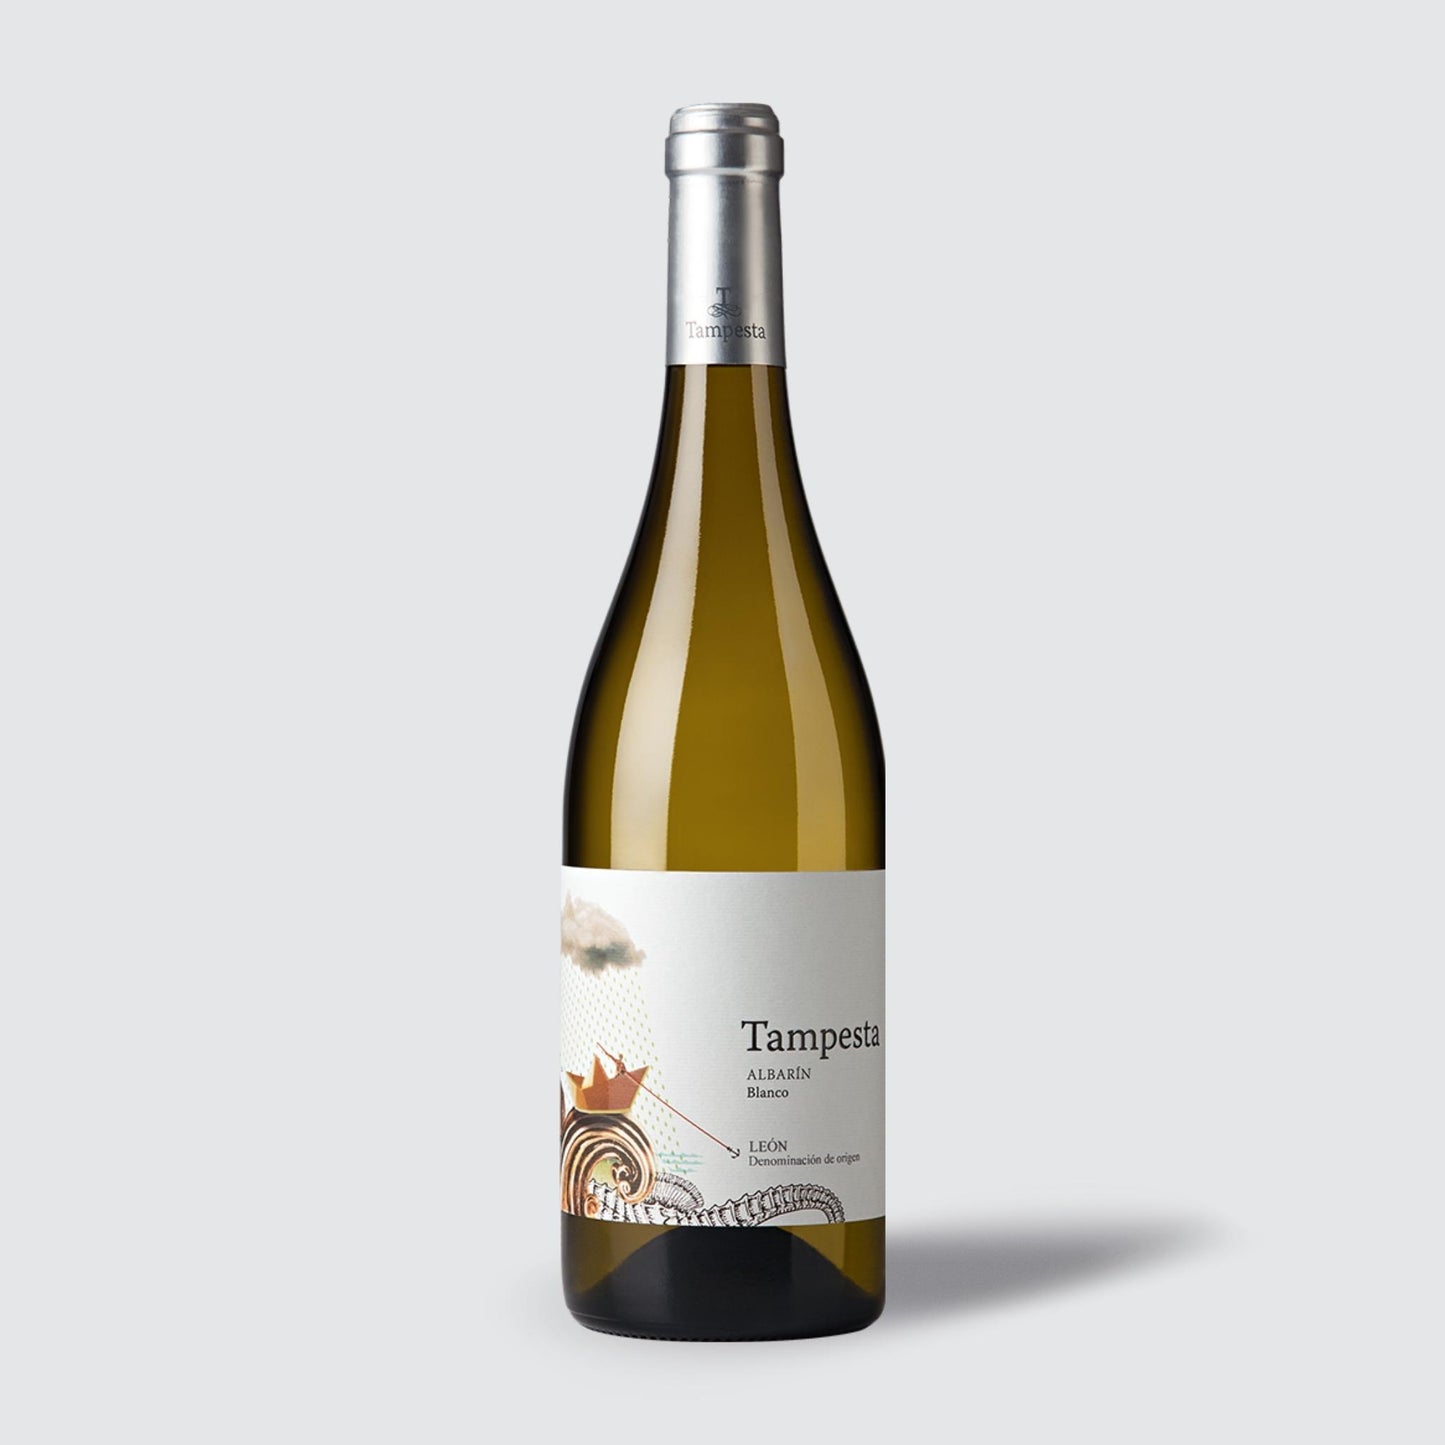 Bodegas Tampesta Albarin Blanco White wine 2020 do leon